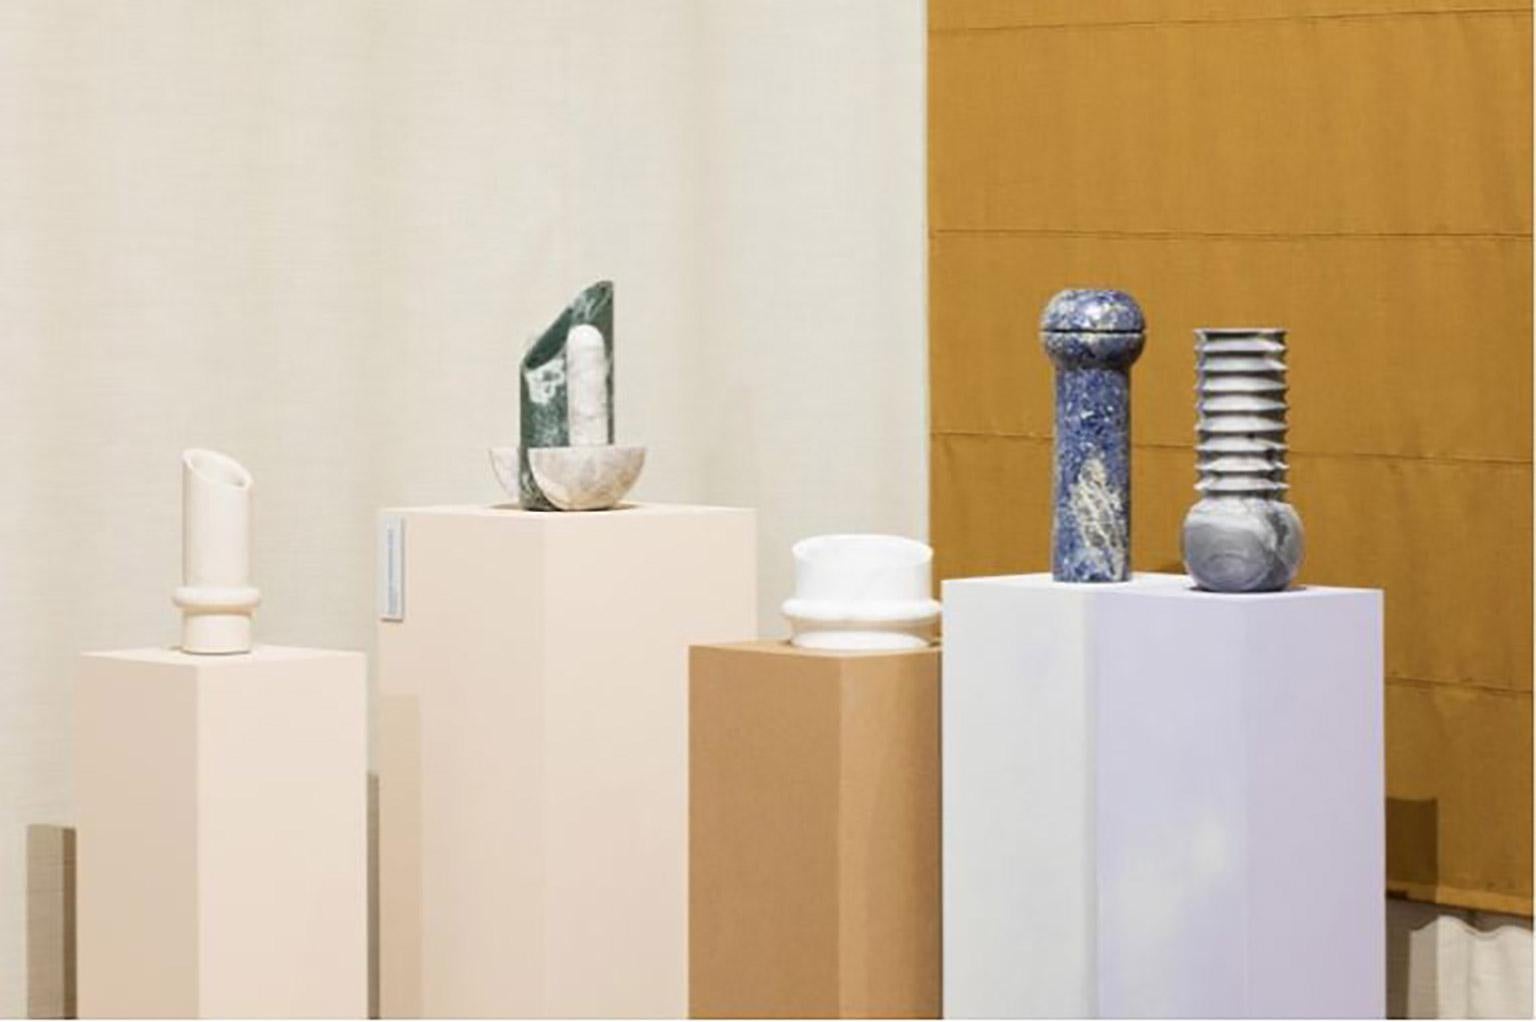 Vase géométrique sculptural en marbre Botticino, collection Simultanea. Les forces centripètes, centrifuges et de mouvement sont canalisées dans des formes en pierre. Une rotation sur l'axe devient un vase, tandis qu'une coupe inclinée suggère un